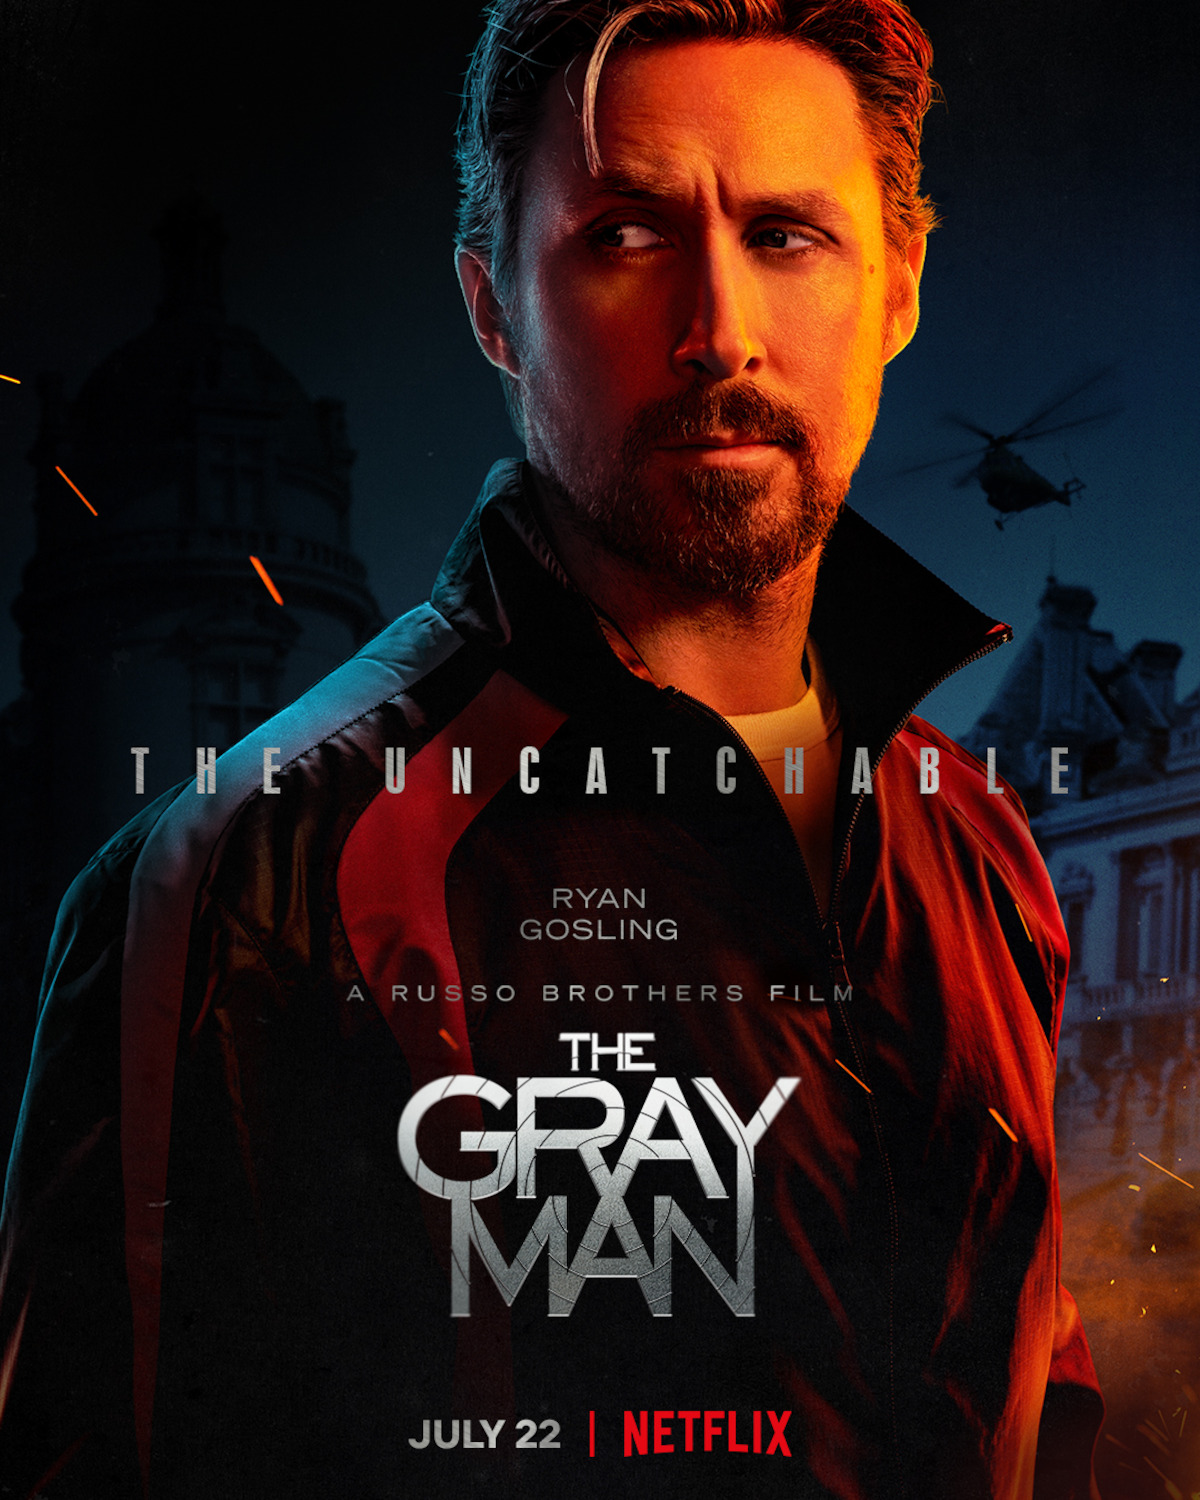 The Gray Man' Cast Character Posters Drop - Netflix Tudum